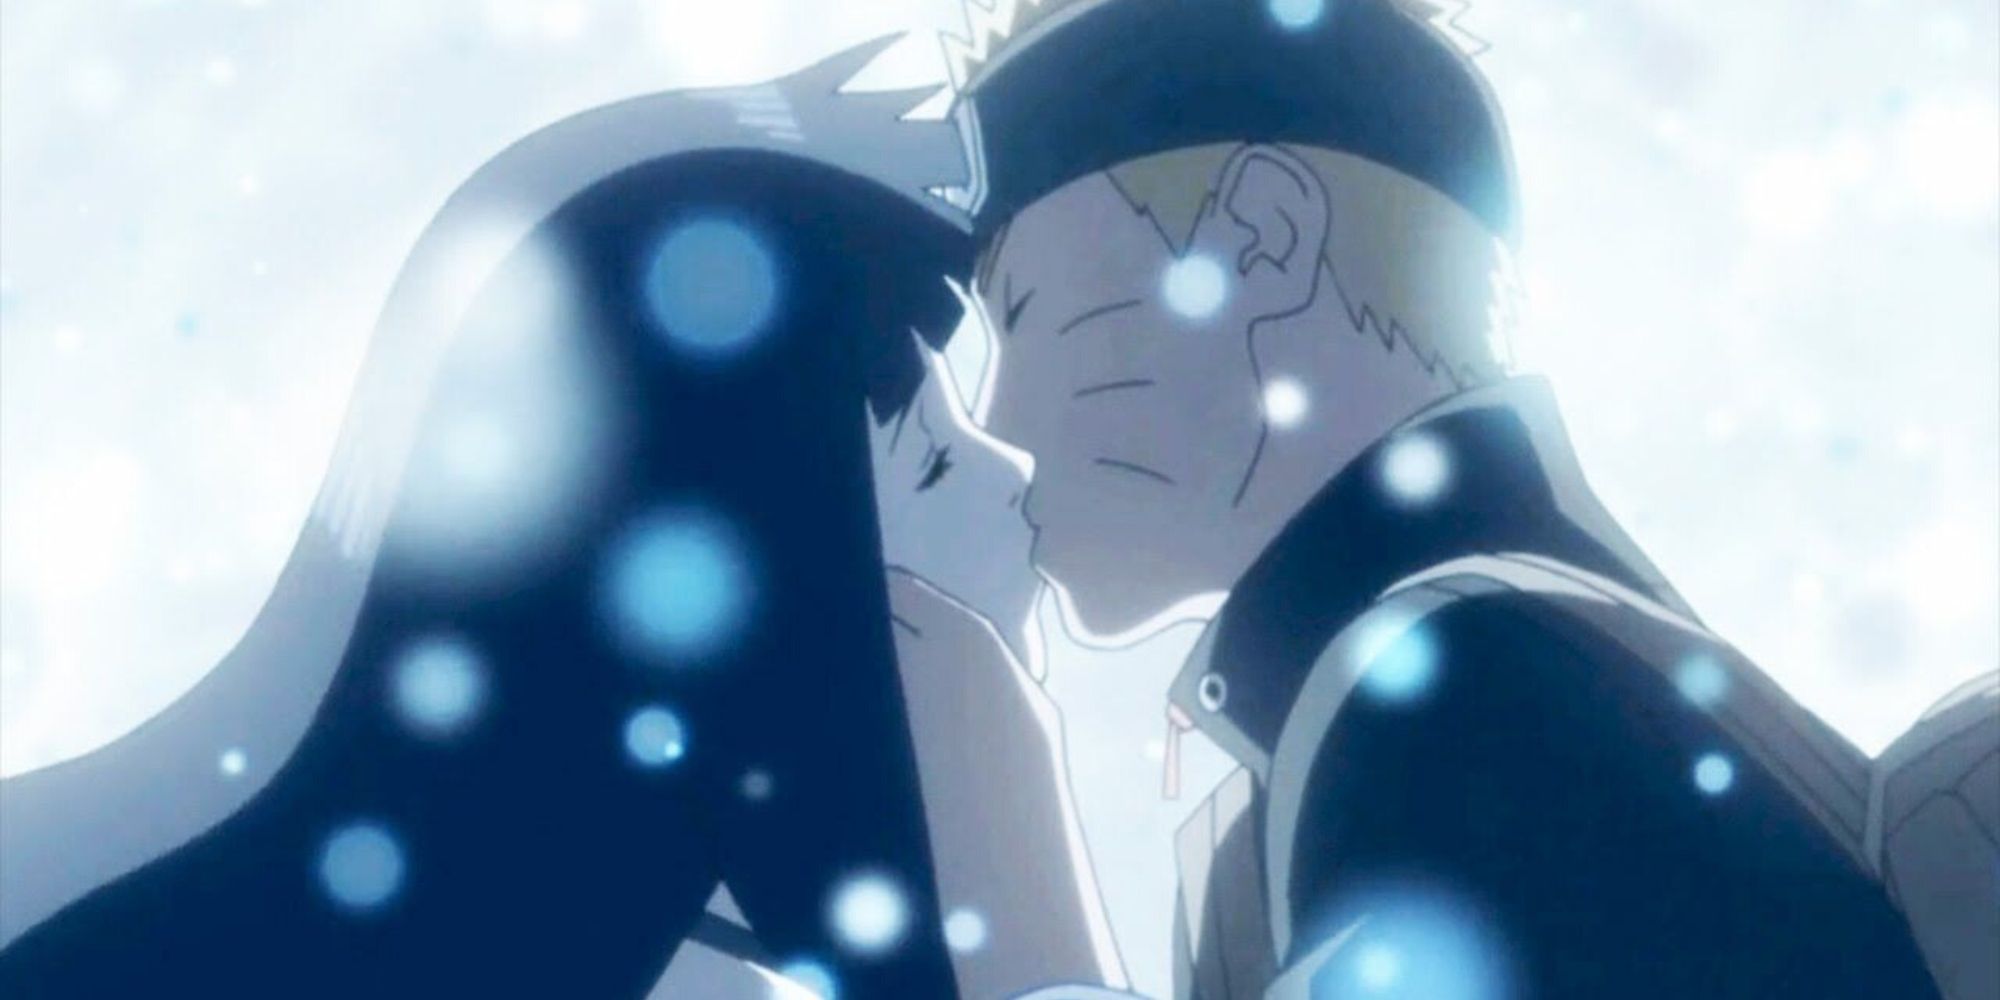 Naruto & Hinata kiss in Naruto